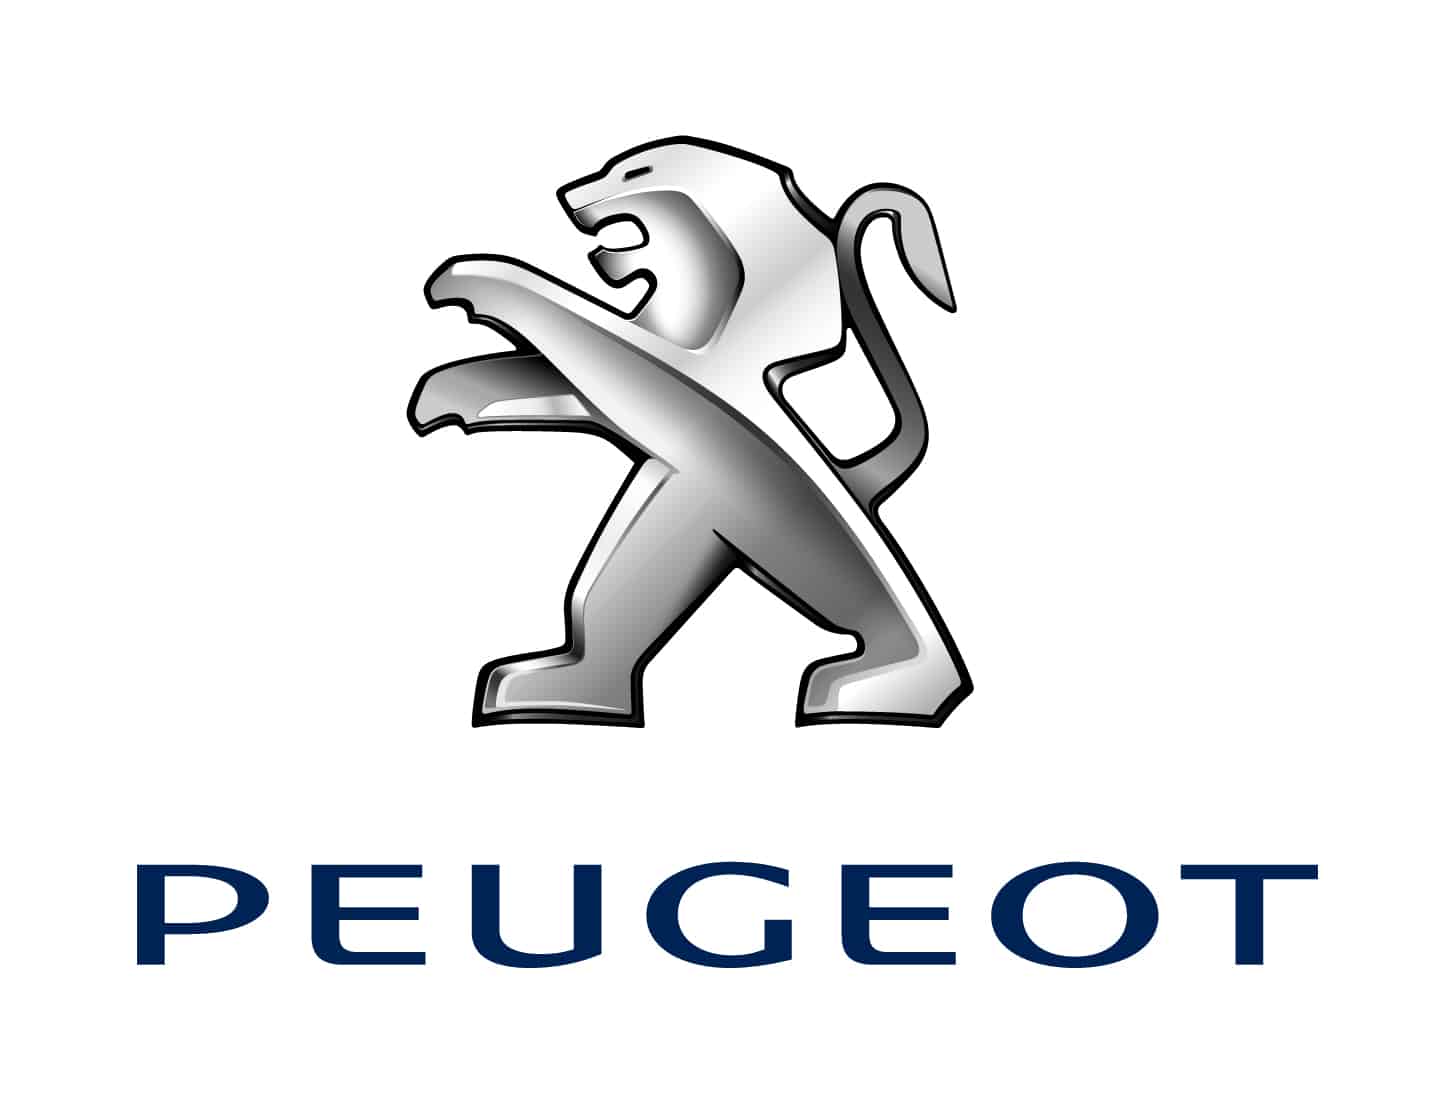 PEUGEOT - elektryfikacja marki w 2019 roku i nowe hasło